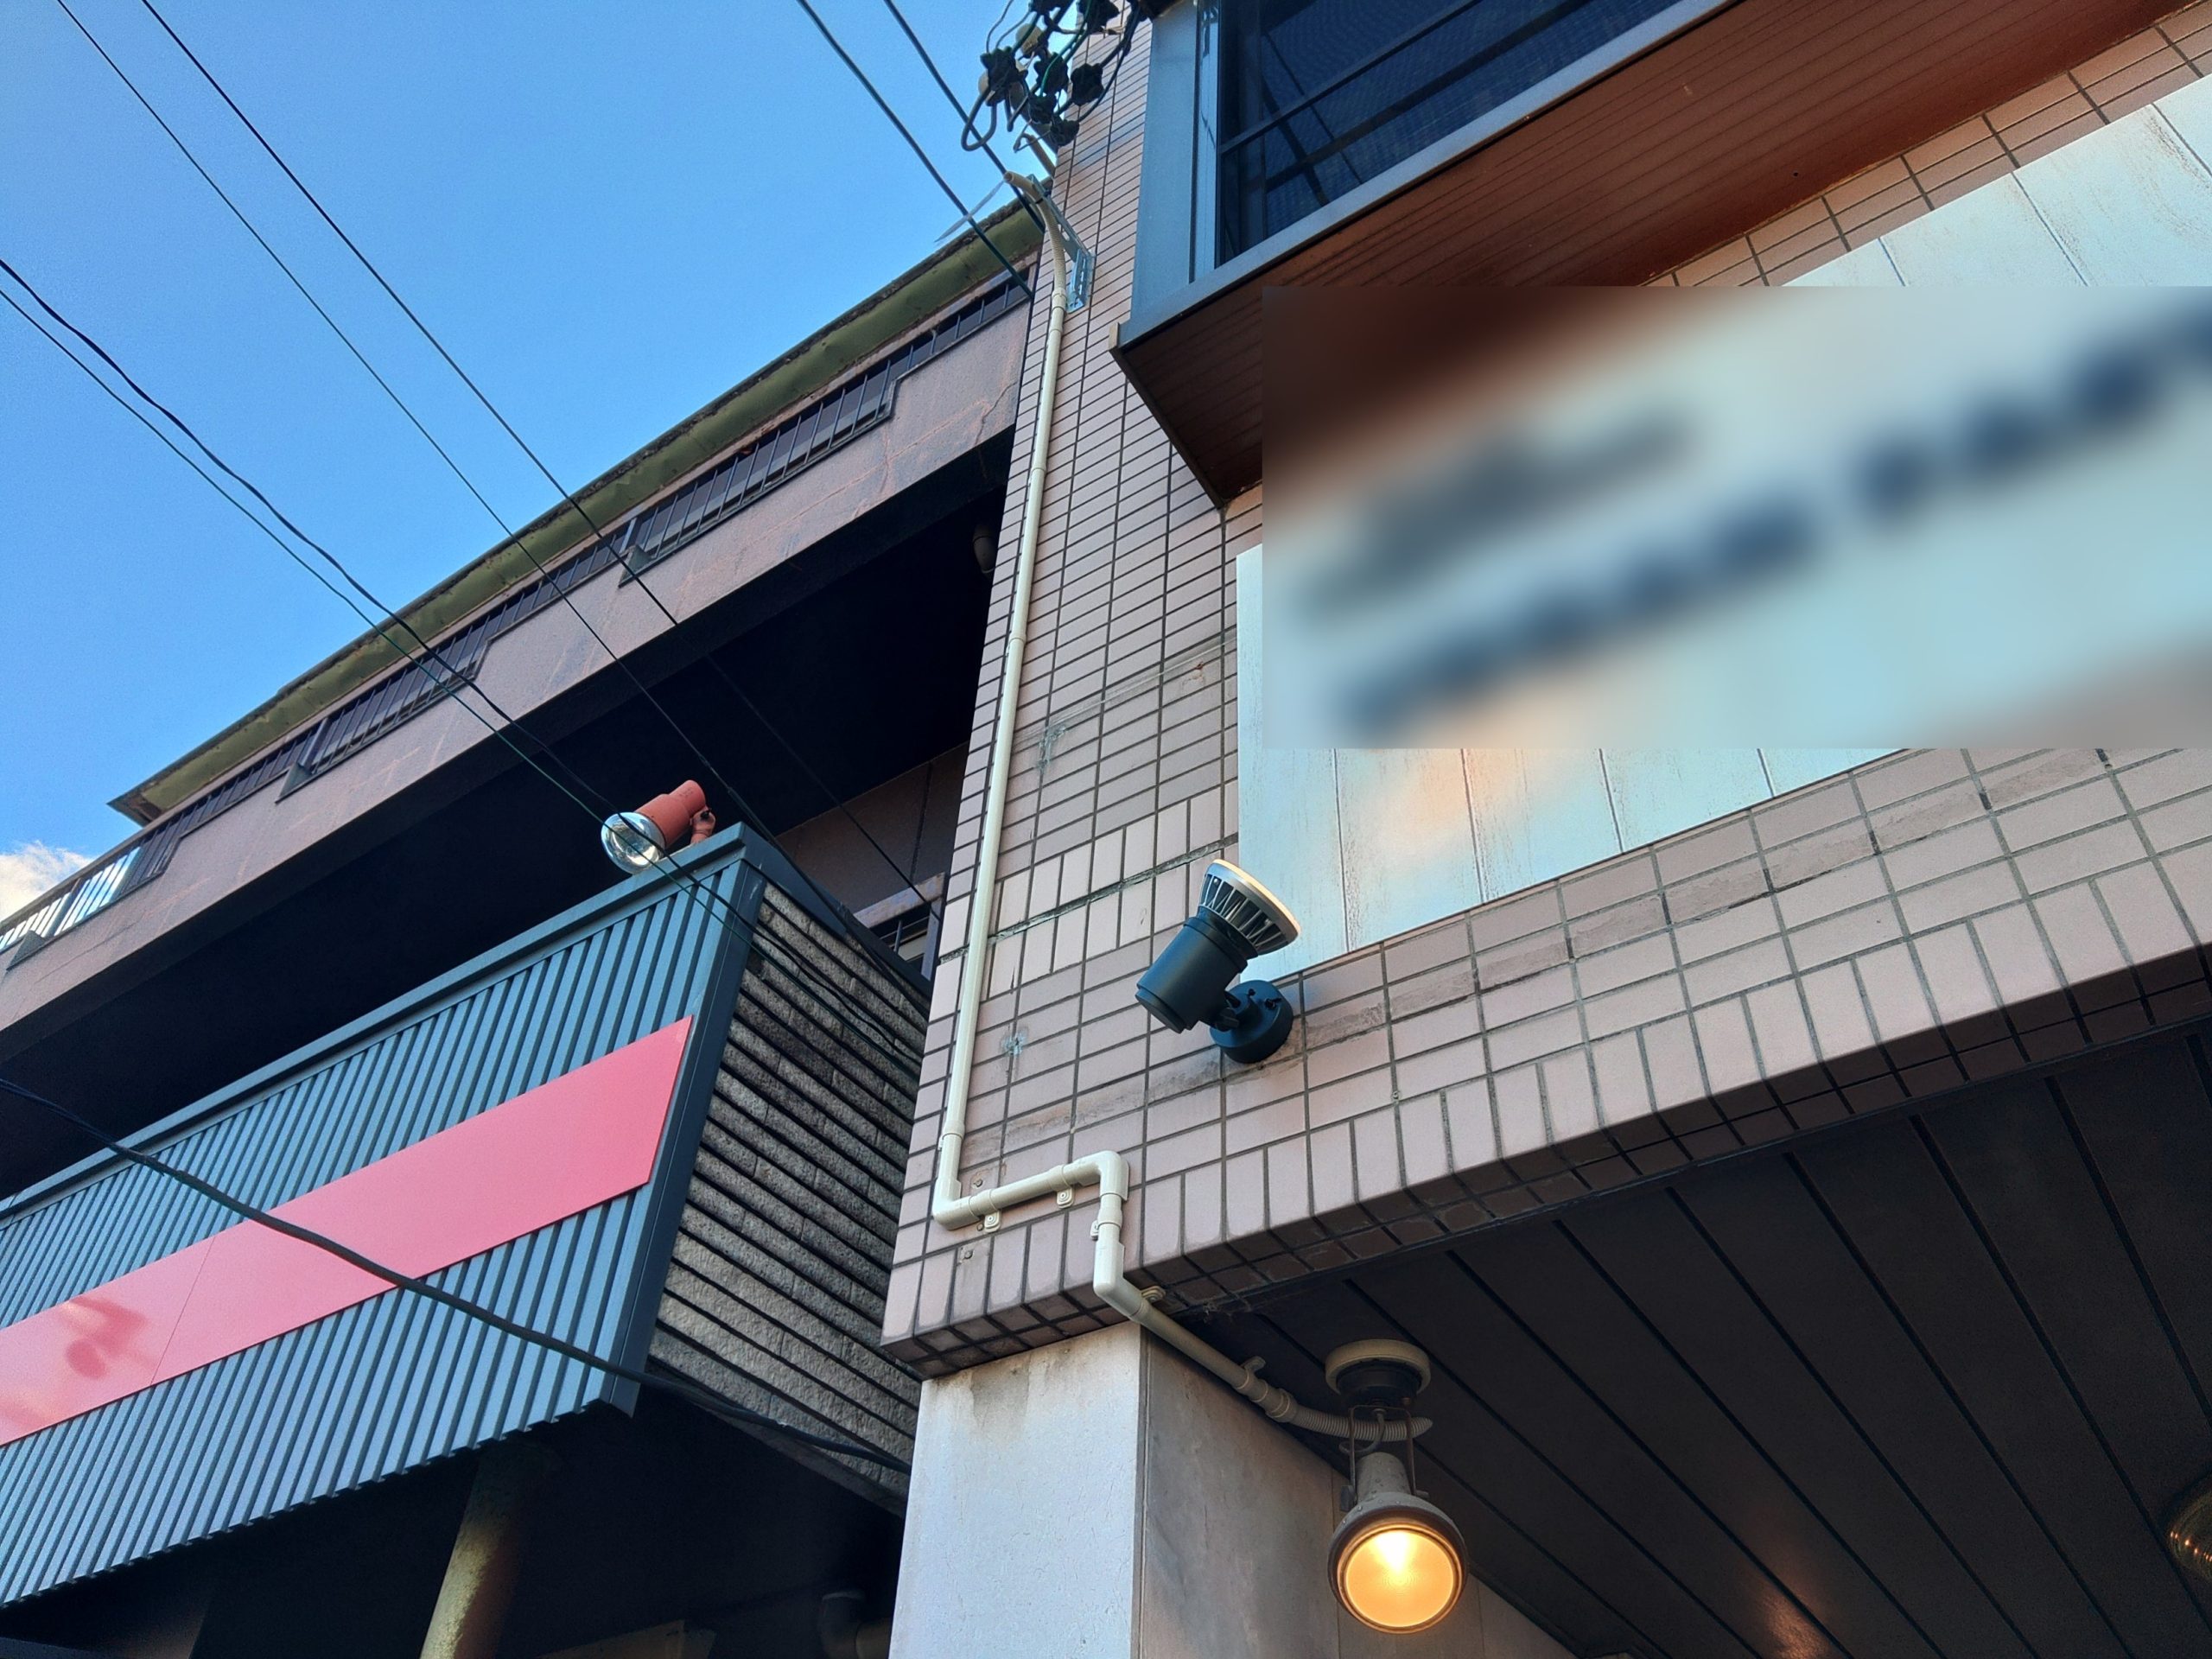 名古屋市守山区の店舗様にてインターネット回線を開通するための配管工事を行いました